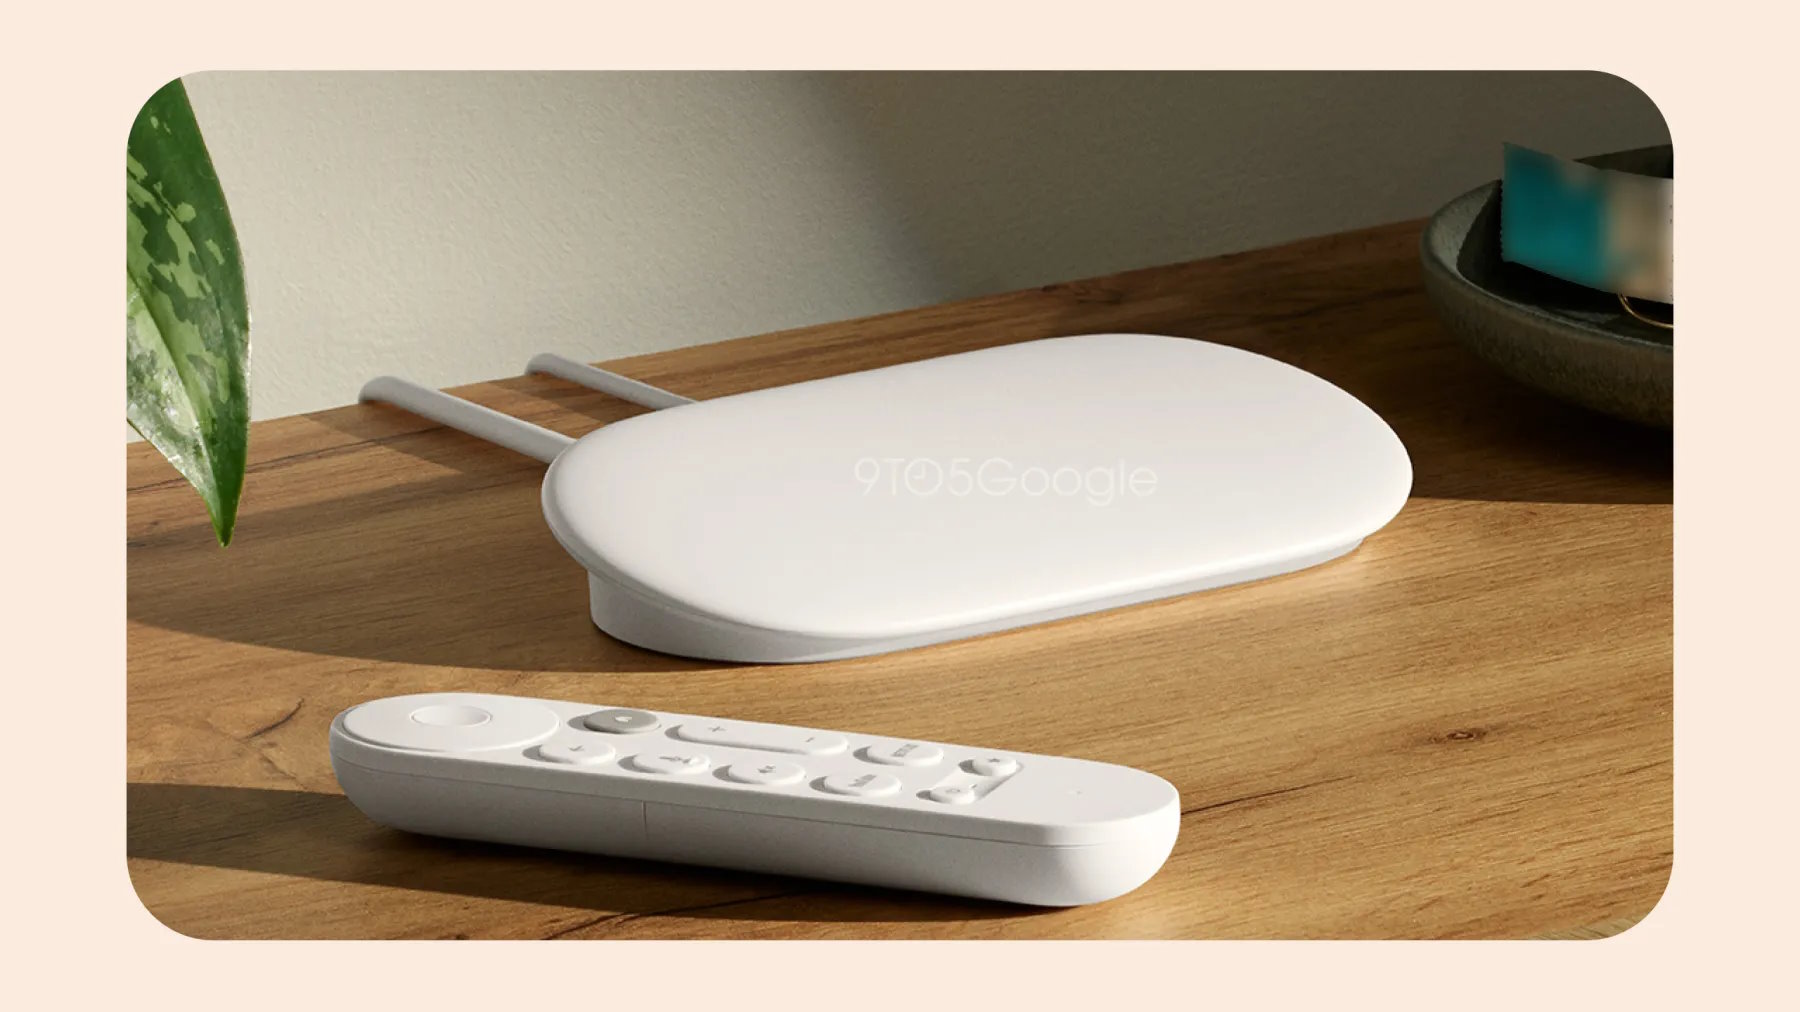 Avec Google TV Streamer, Google abandonnerait le format Chromecast pour passer sur une box TV. © 9to5Google